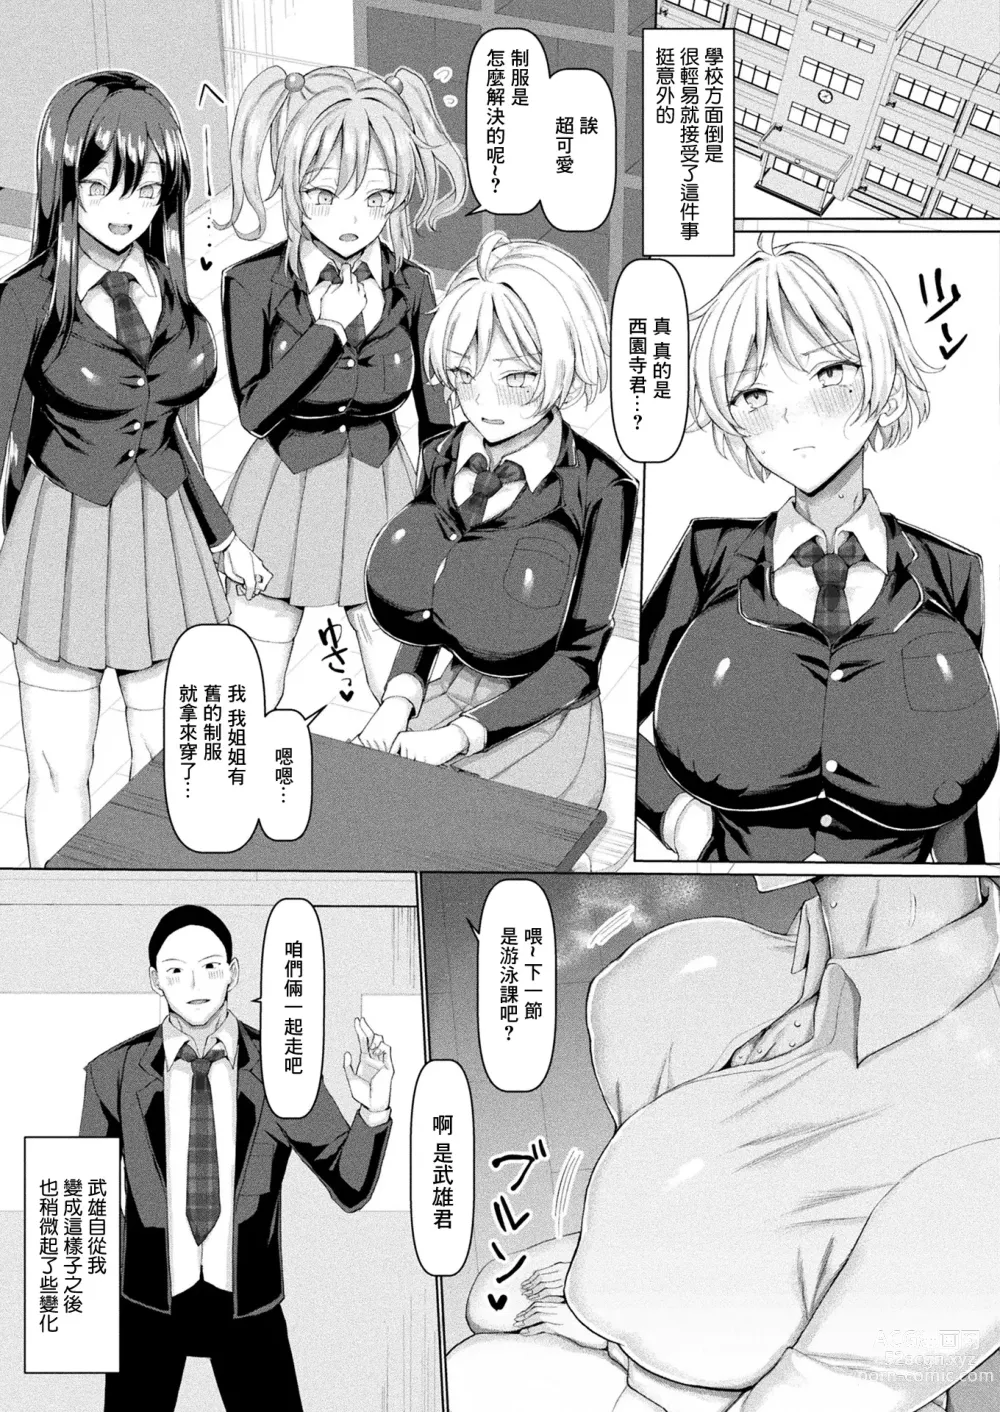 Page 16 of manga Mabudachi Nagachichi Daihenshin